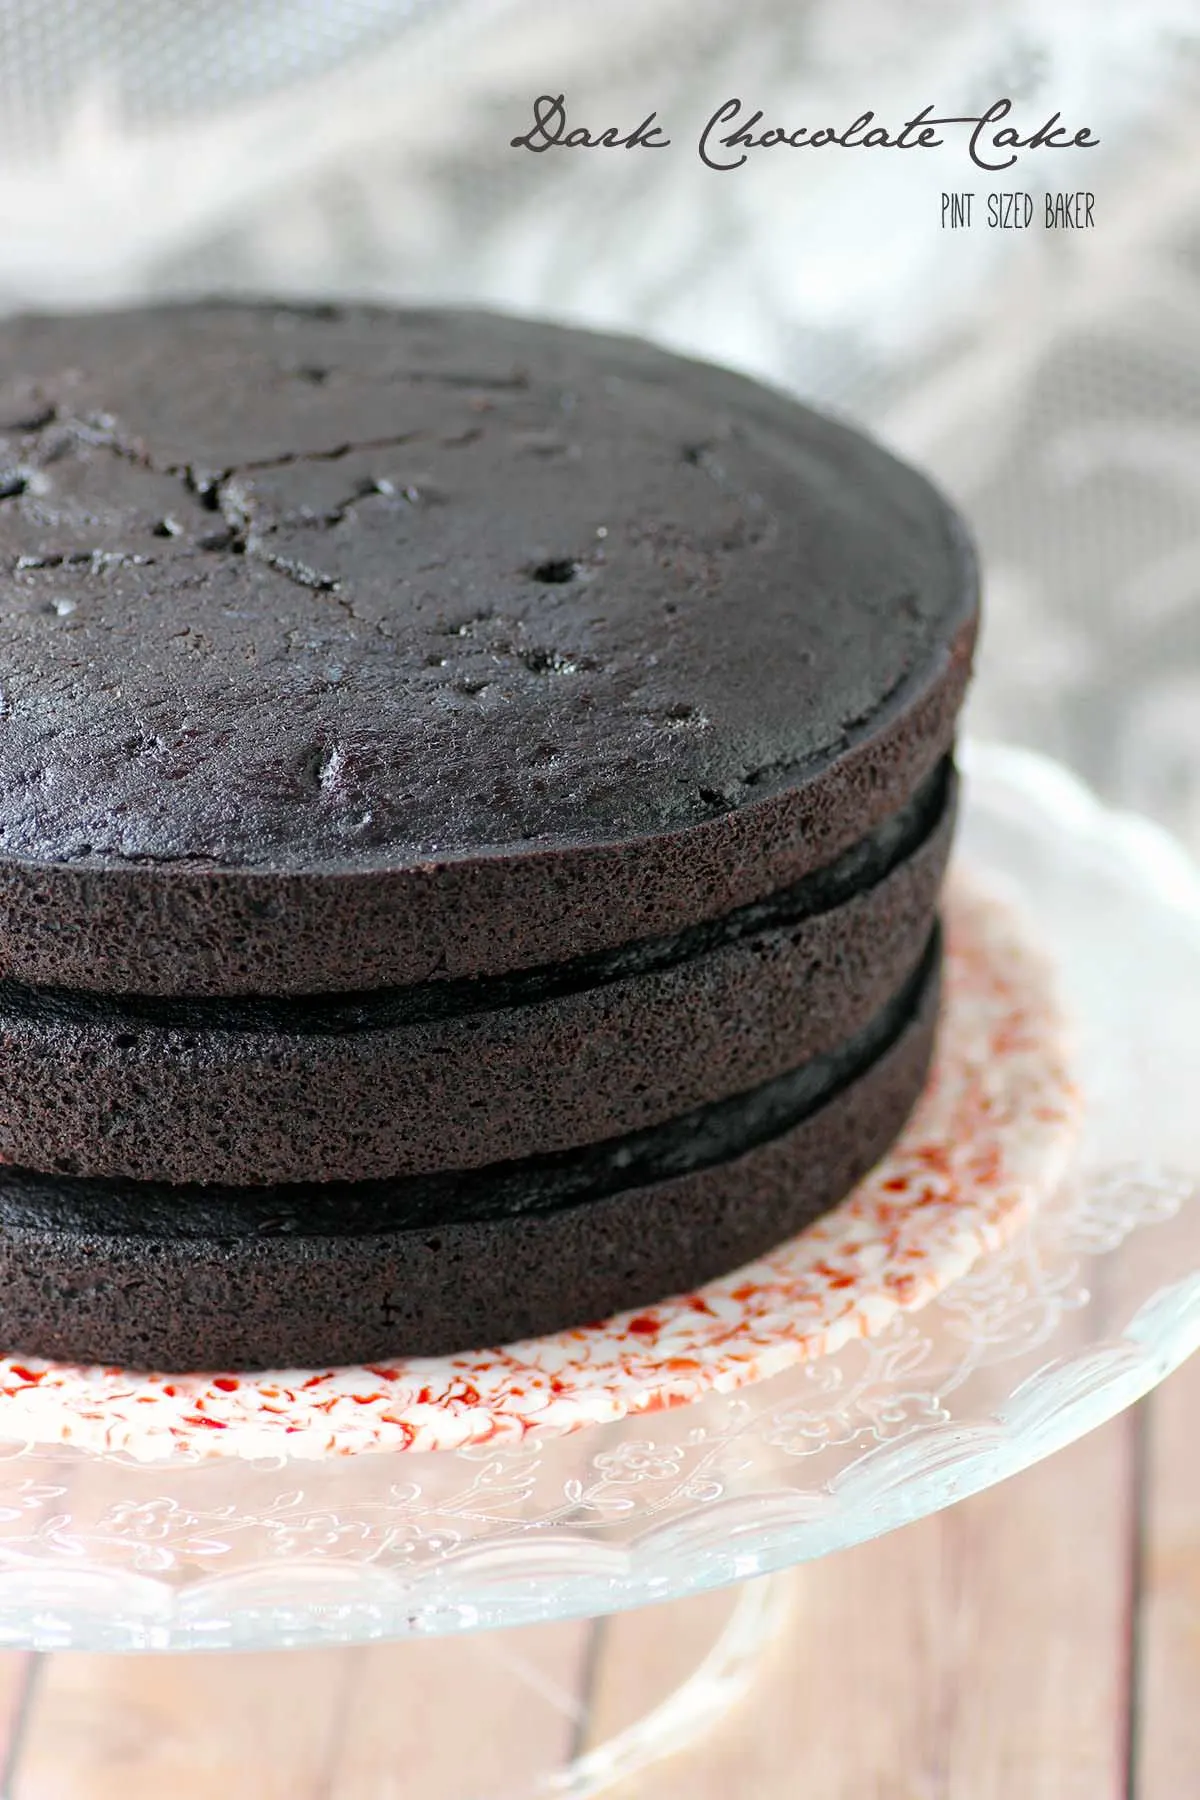 Black Cocoa Cake | Buttermilk by Sam